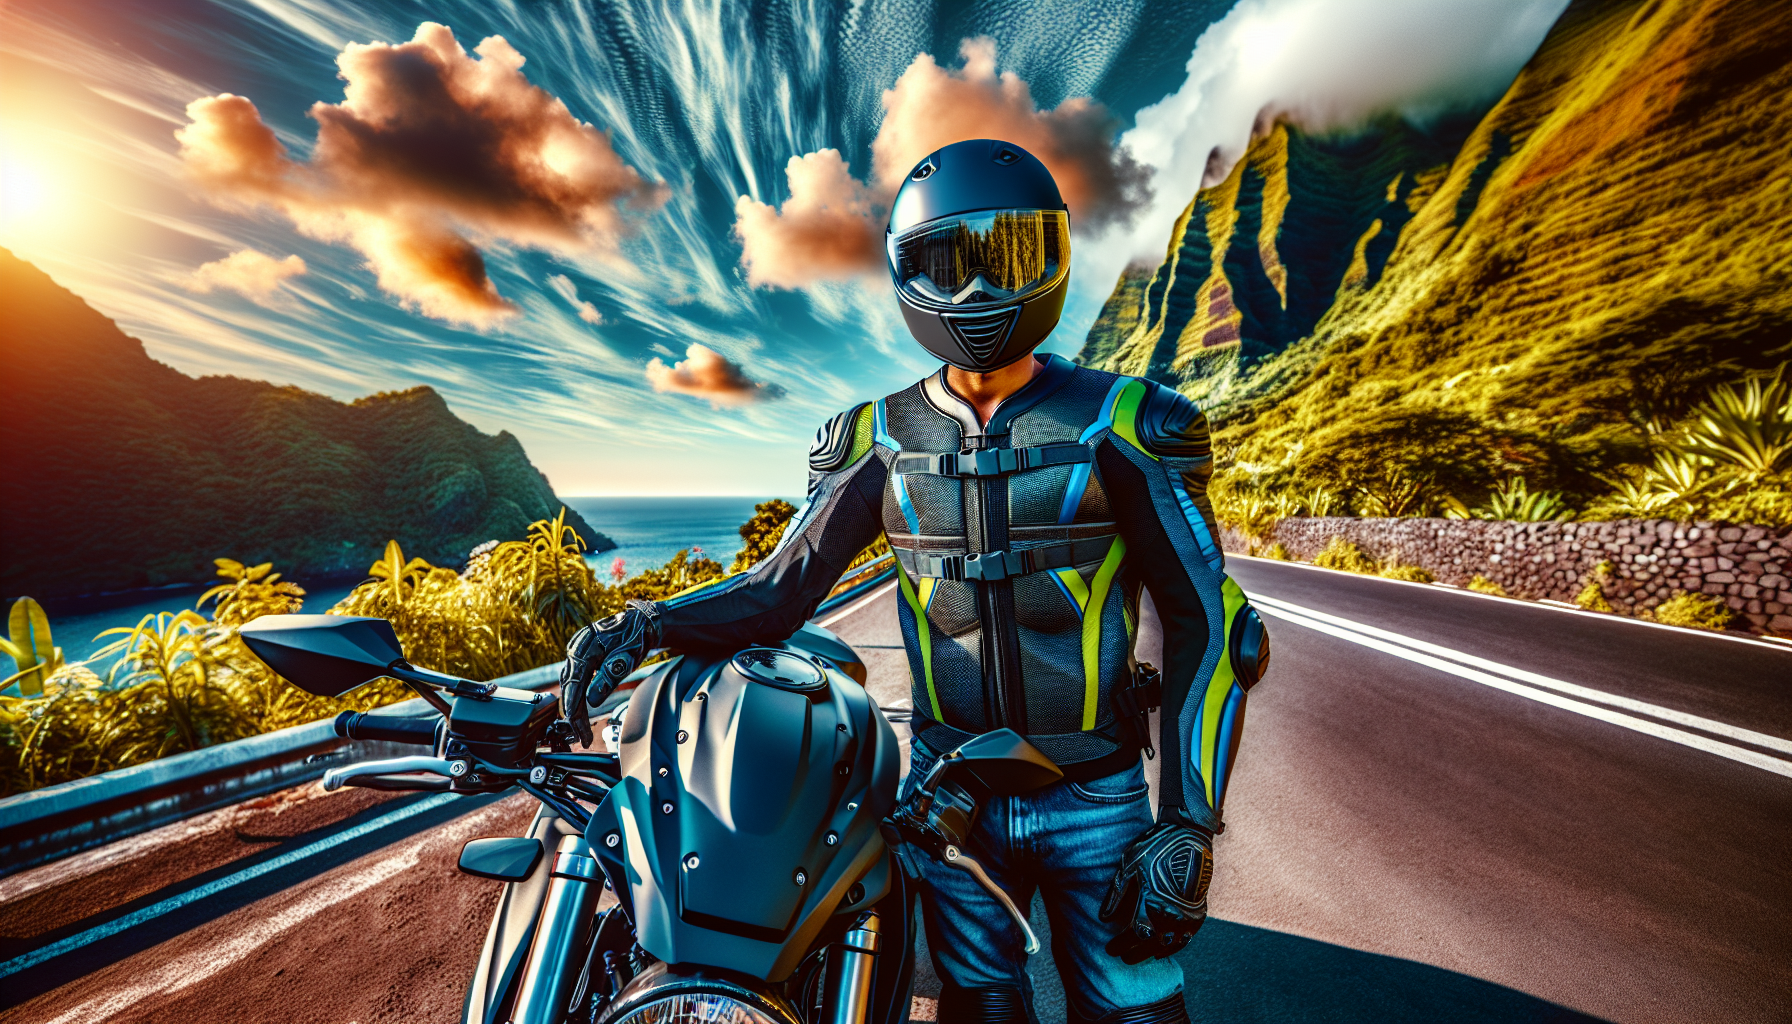 assurance moto 974 : découvrez la garantie équipement du motard pour une protection optimale en moto à la réunion